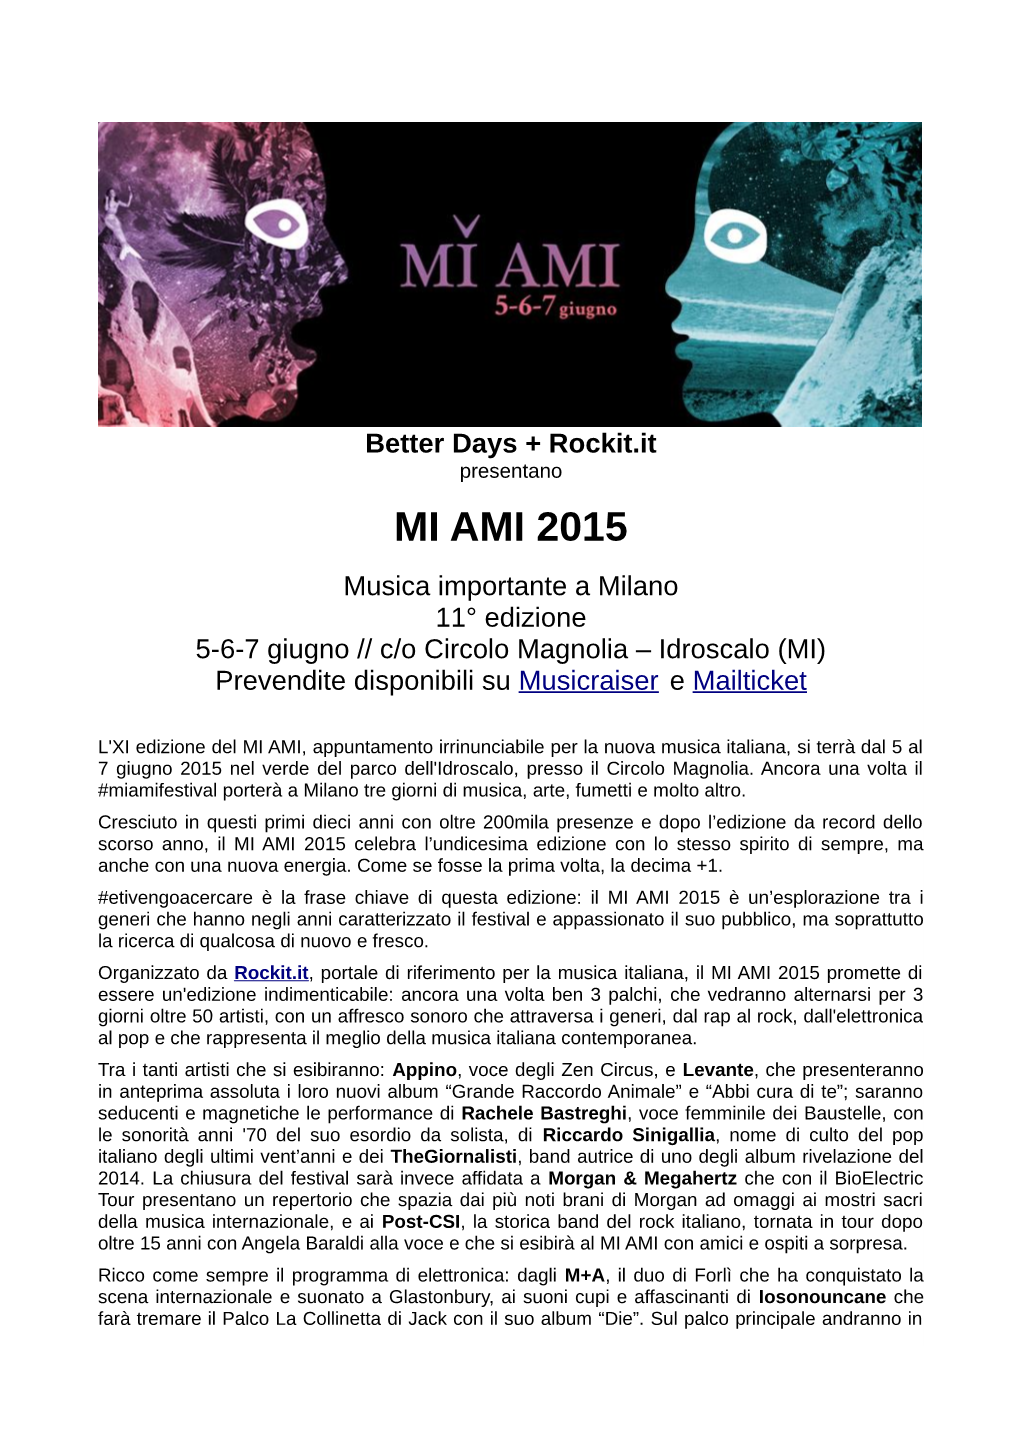 MI AMI 2015 Musica Importante a Milano 11° Edizione 5-6-7 Giugno // C/O Circolo Magnolia – Idroscalo (MI) Prevendite Disponibili Su Musicraiser E Mailticket